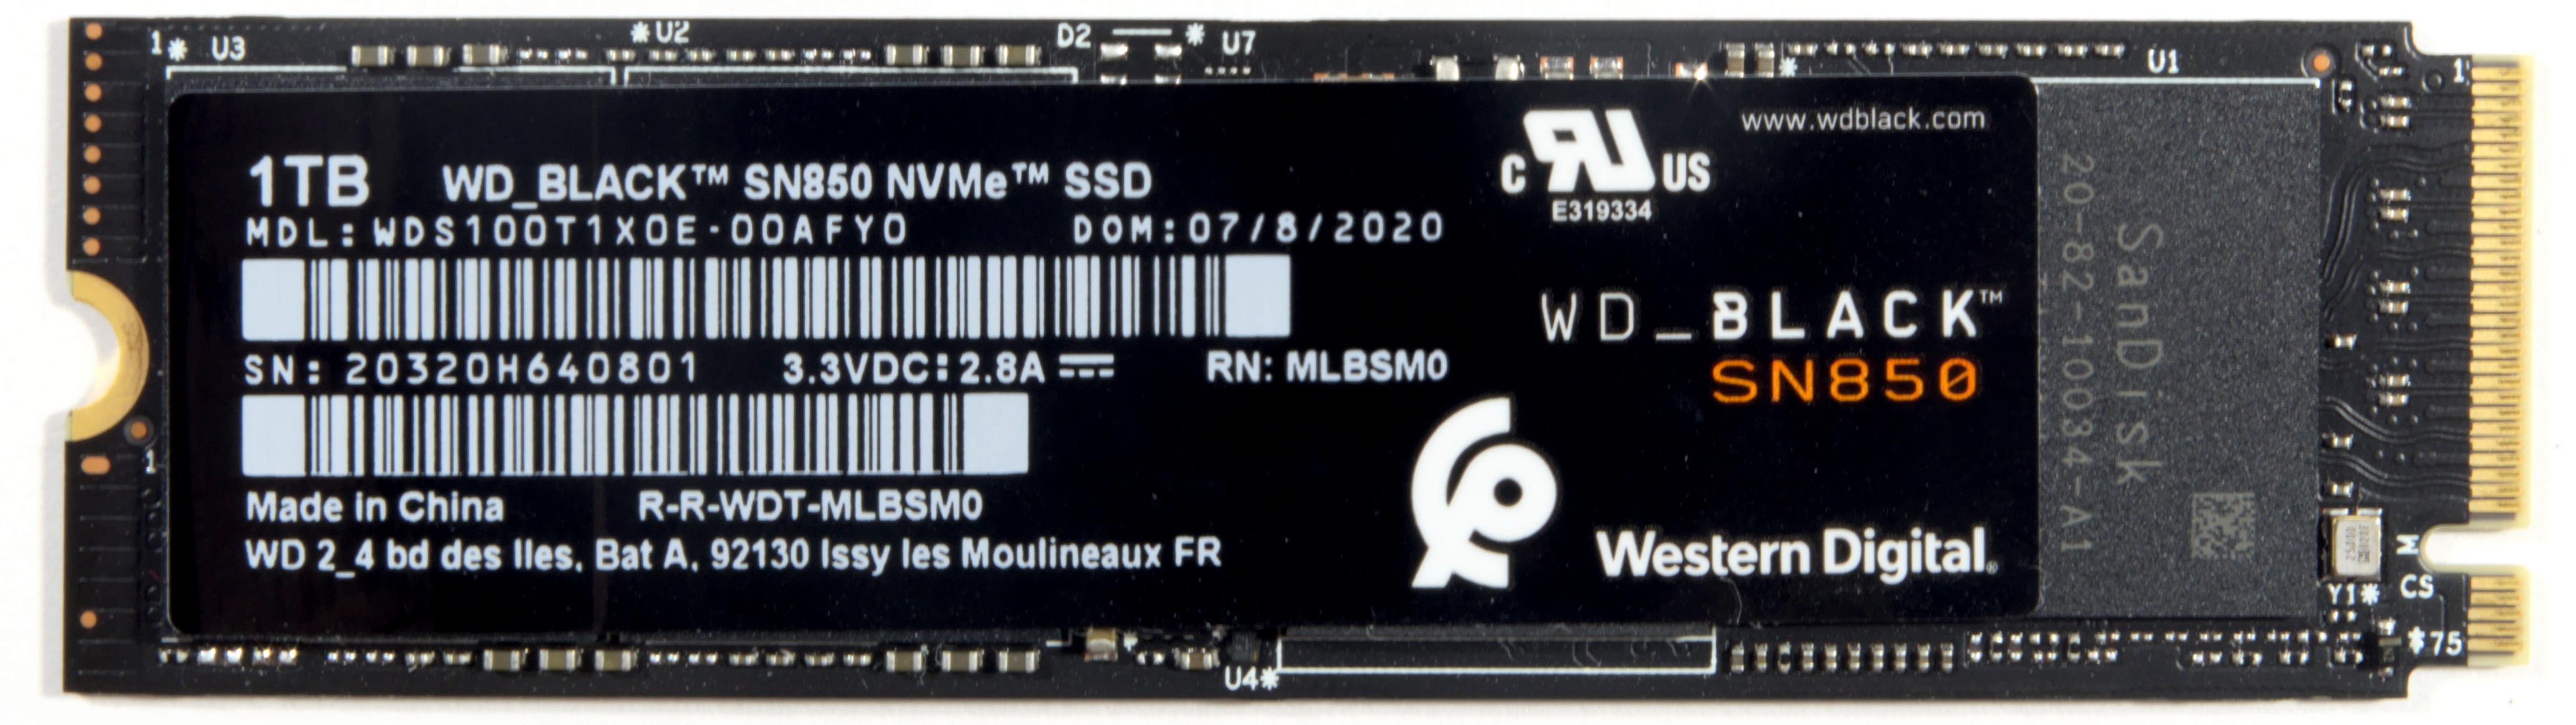 WD Black SN850X review: A Better SN850 - Tech Advisor